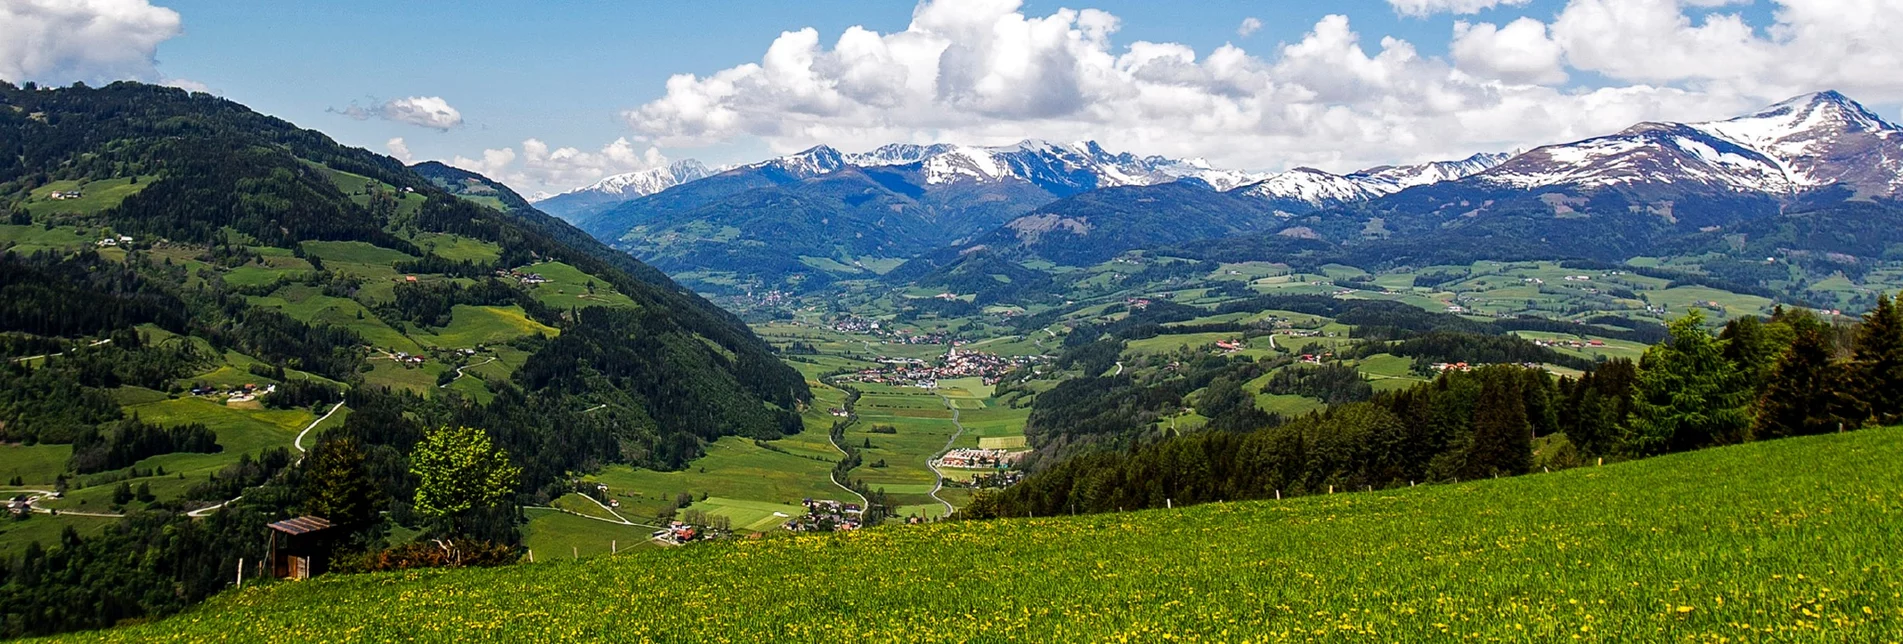 Blick ins Katschtal | © Steiermark Tourismus/Tom Lamm